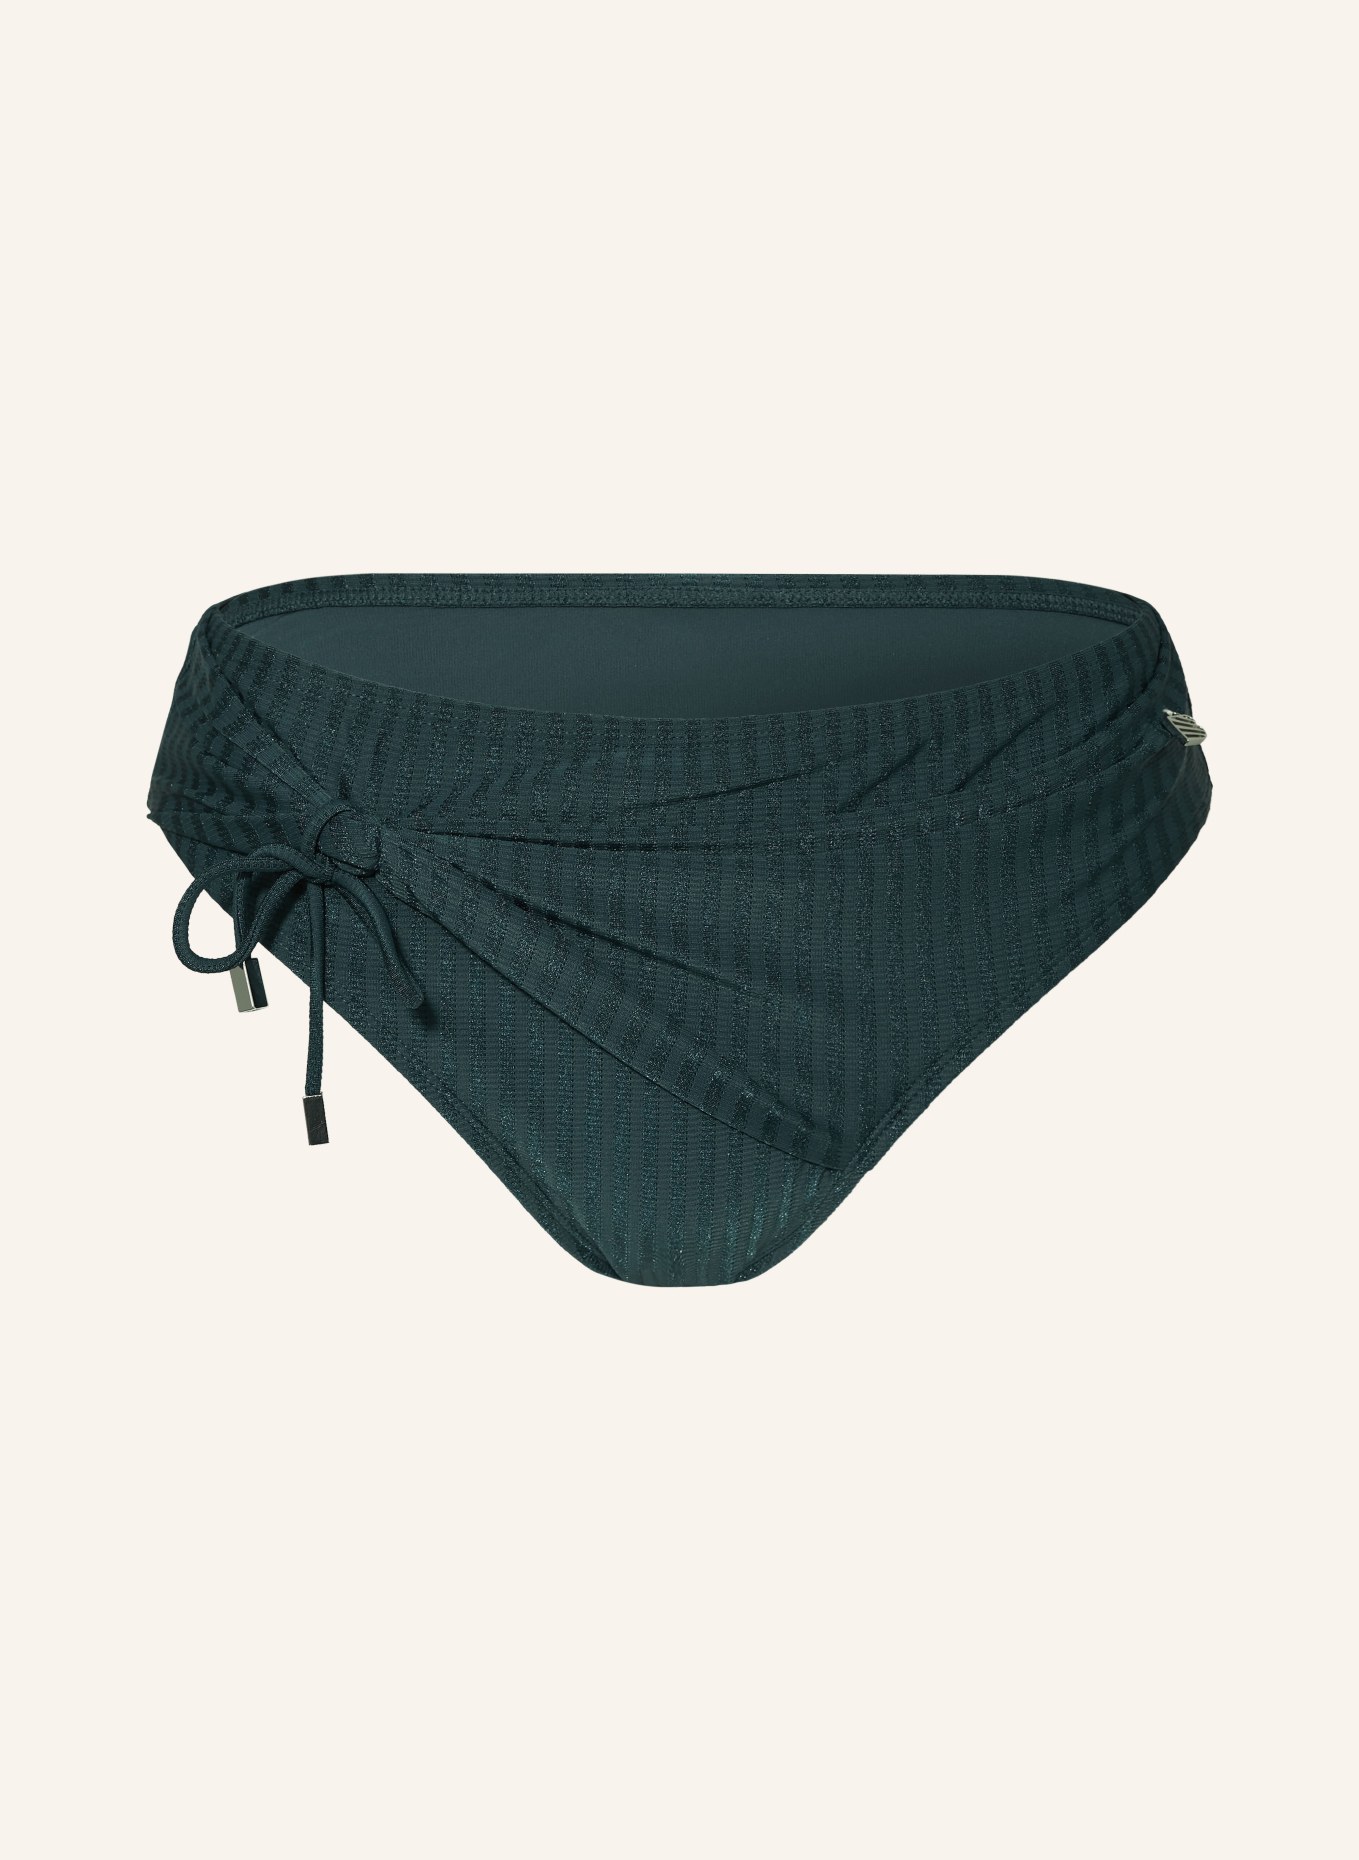 BEACHLIFE Basic bikini bottoms REFLECTING POND, Color: TEAL (Image 1)